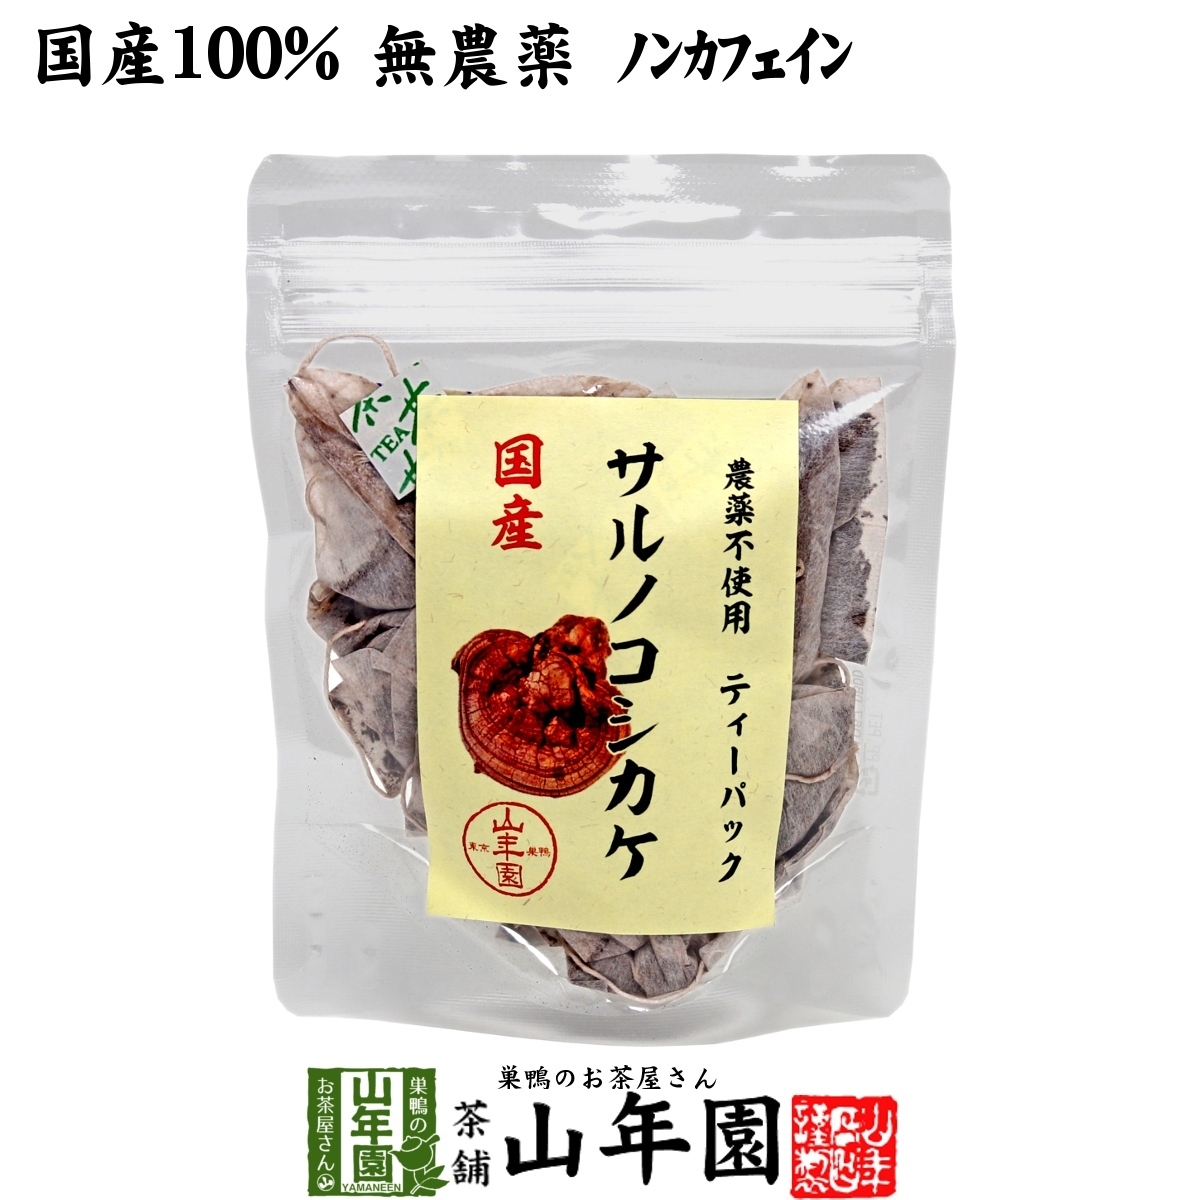 Здоровый чай 100% домашний чай Сарно Косикаке Чай Упаковка 1,5 г×20 пакетов Миядзаки Префектура Кагосима Без пестицидов Кофеин Без Доставки